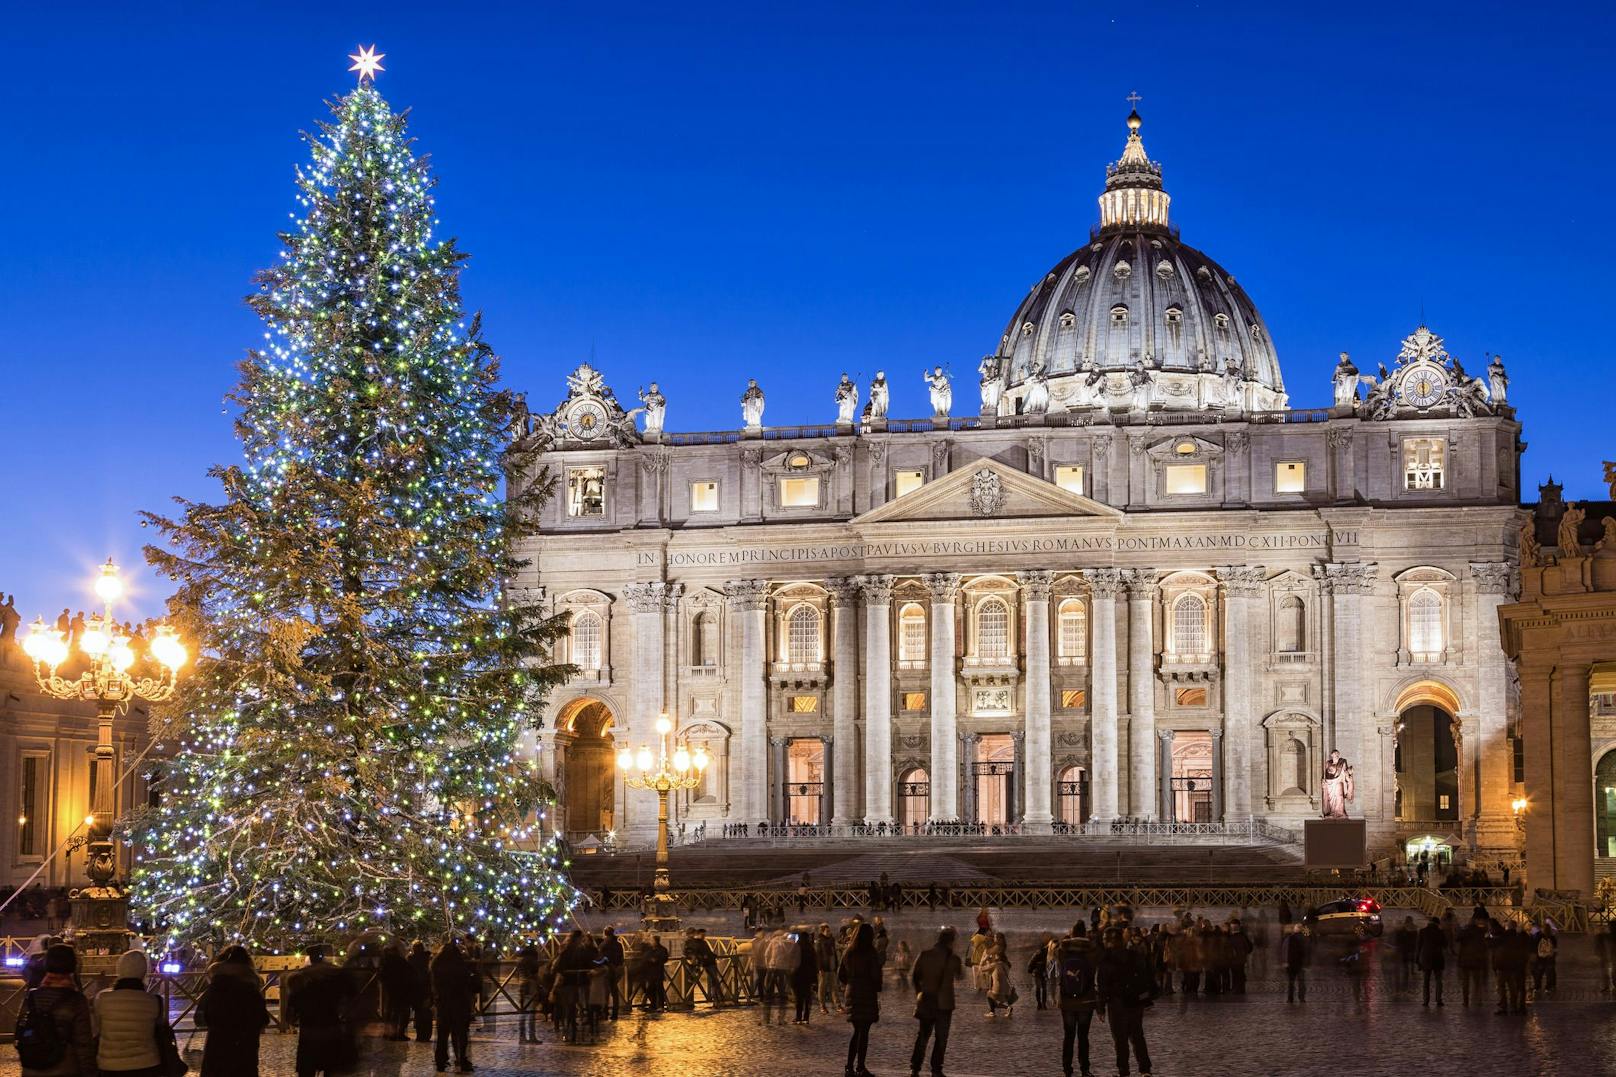 Das Weihnachtsfest wird in <strong>Italien </strong>am 25. Dezember gefeiert. Die Bescherung findet morgens statt. Dann folgt das große Weihnachtsessen. Im Norden Italiens findet man auch den Weihnachtsbaum häufig. Am 6. Jänner gibt es eine Tradition, die unserem Nikolaus ähnelt: La Befana, die gute Hexe. Kinder hängen Strümpfe an den Kamin oder das Fenster, sowie Essen für die Hexe und erhalten dann noch eine Bescherung.&nbsp;